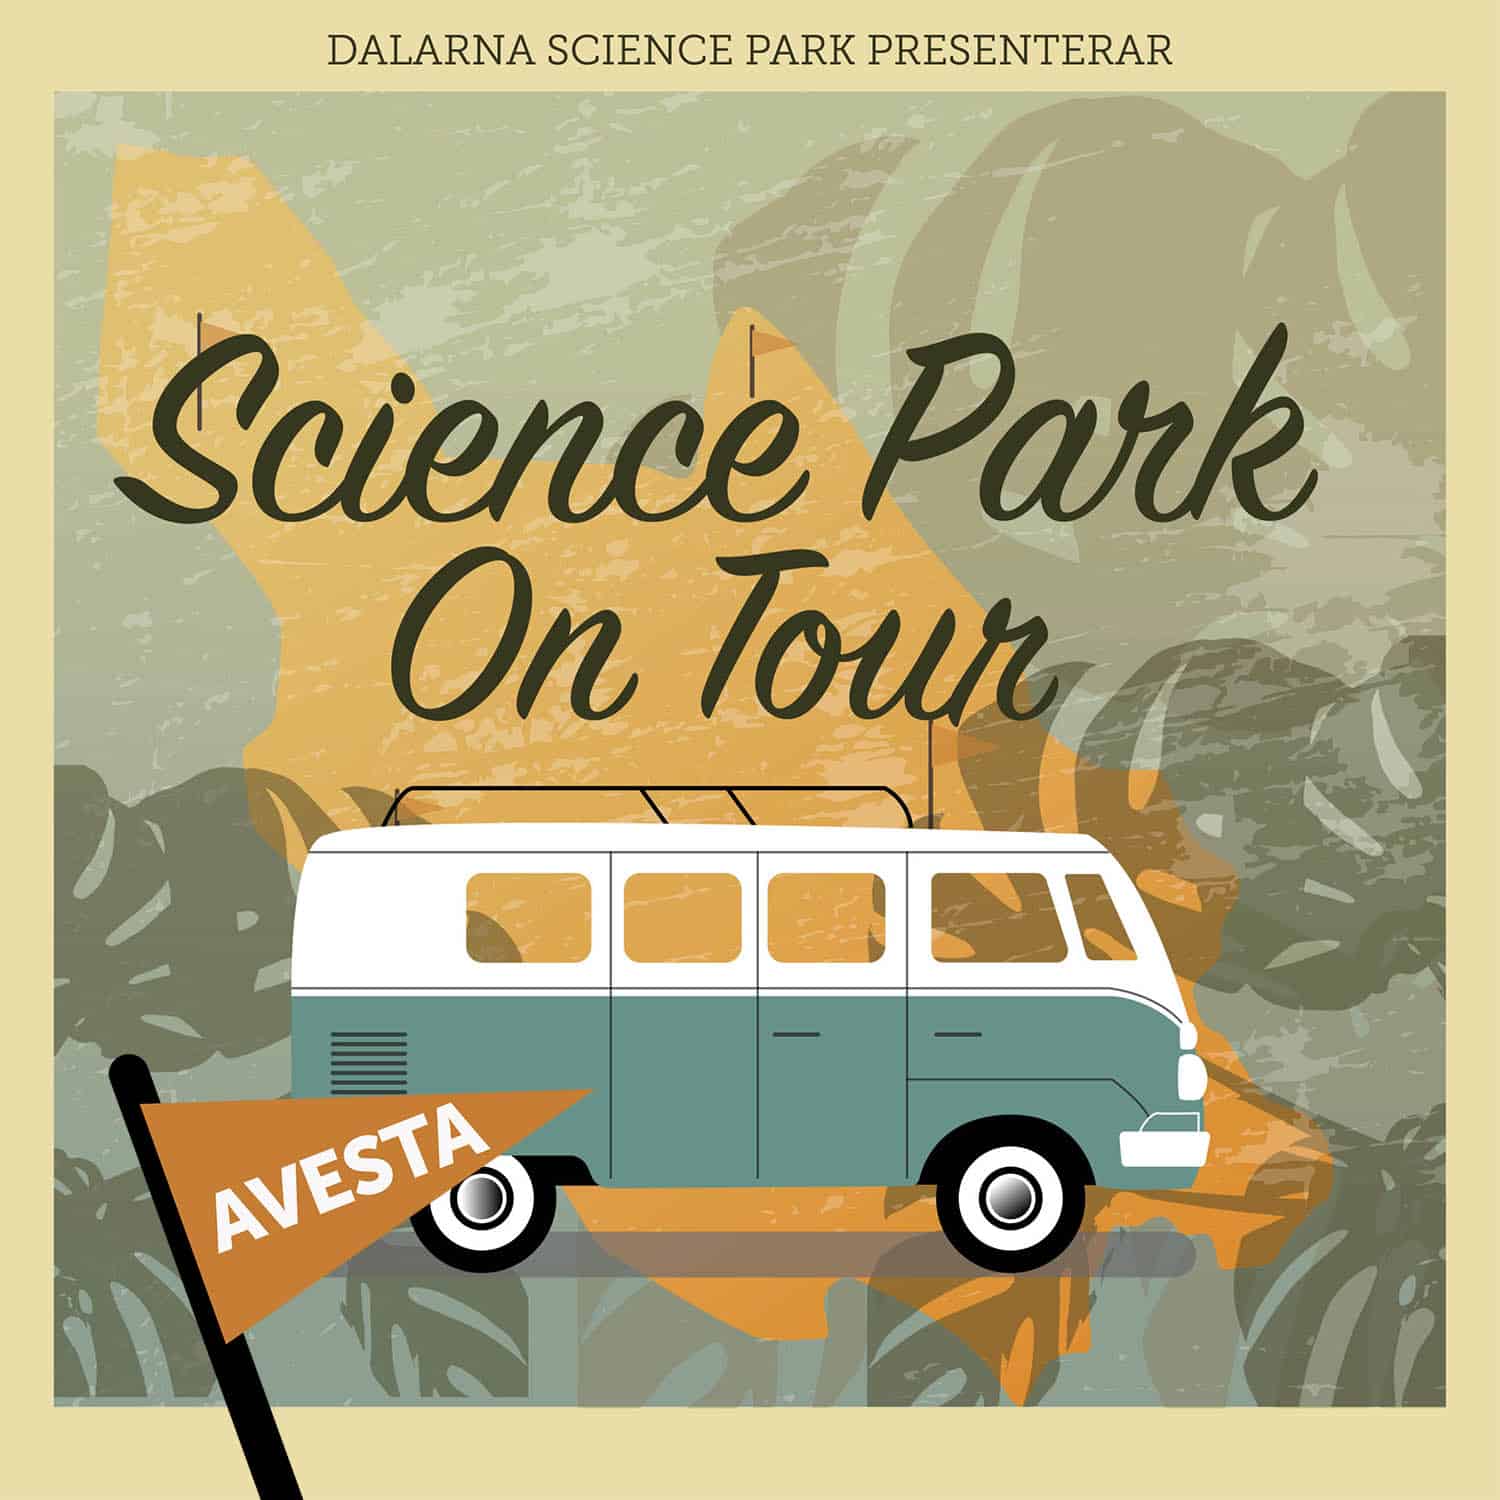 Dalarna Science Park on tour – Företagardagen Avesta!